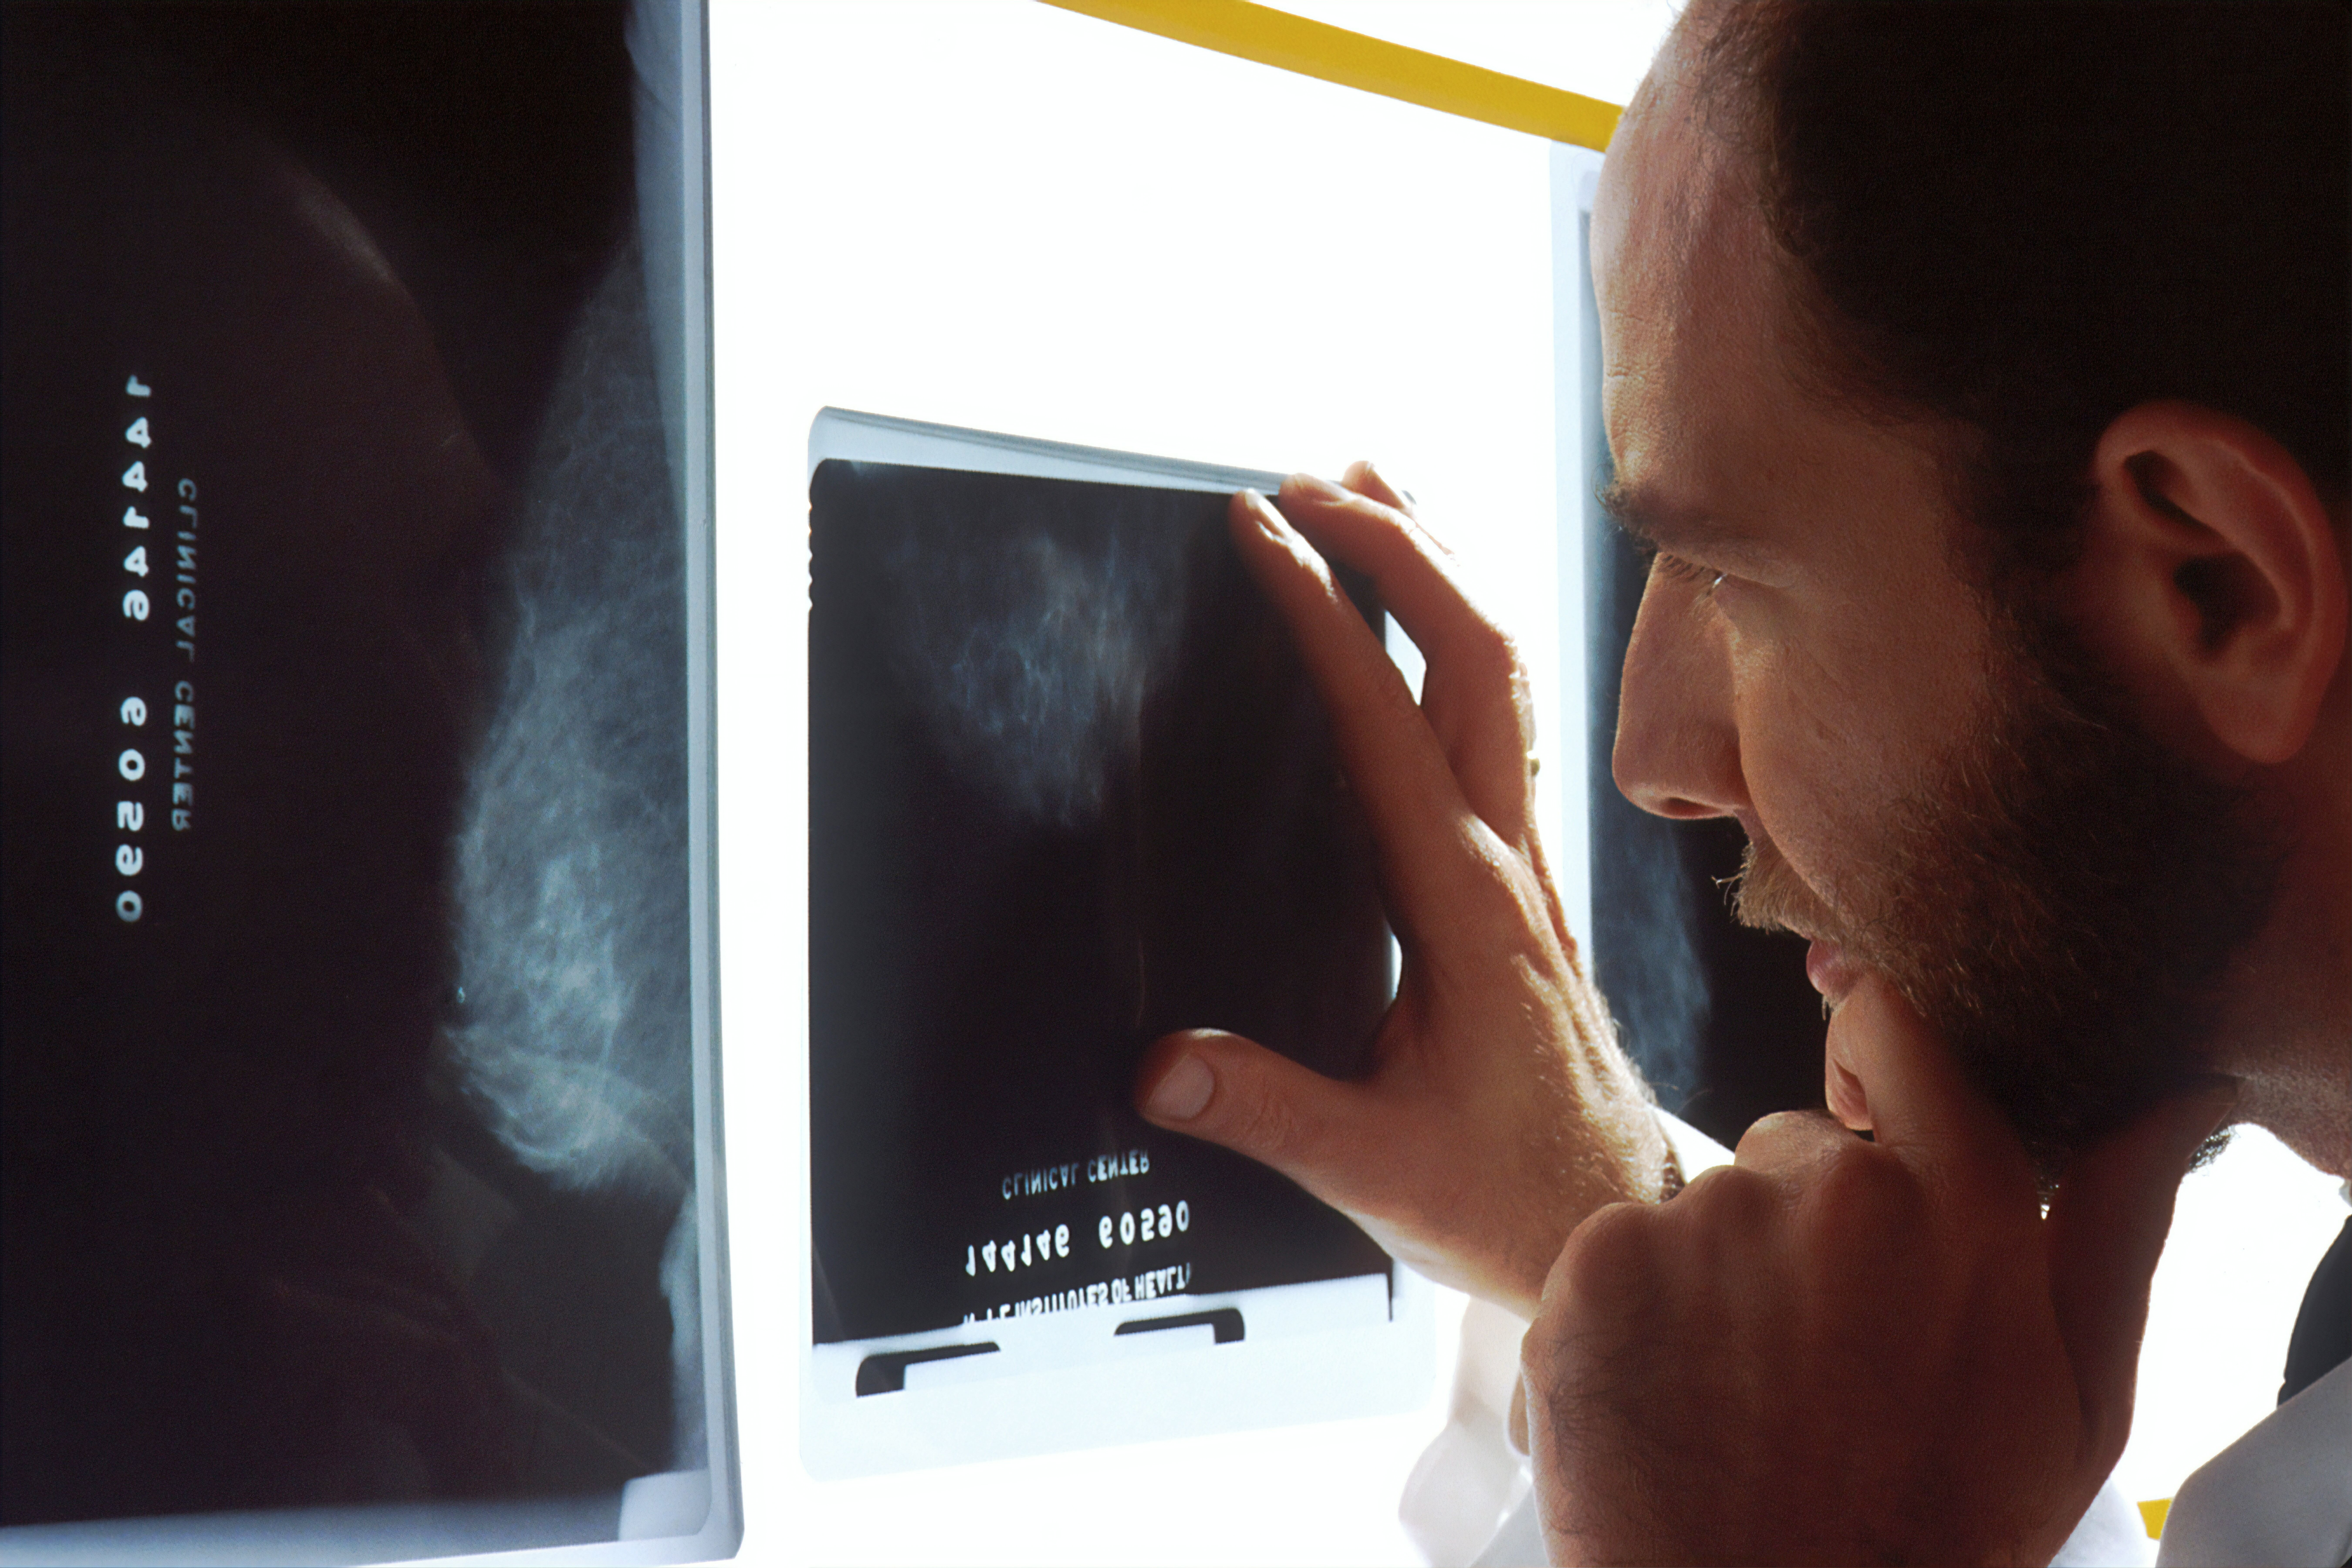 Síntomas que podrían indicar que un hombre padece cáncer de próstata